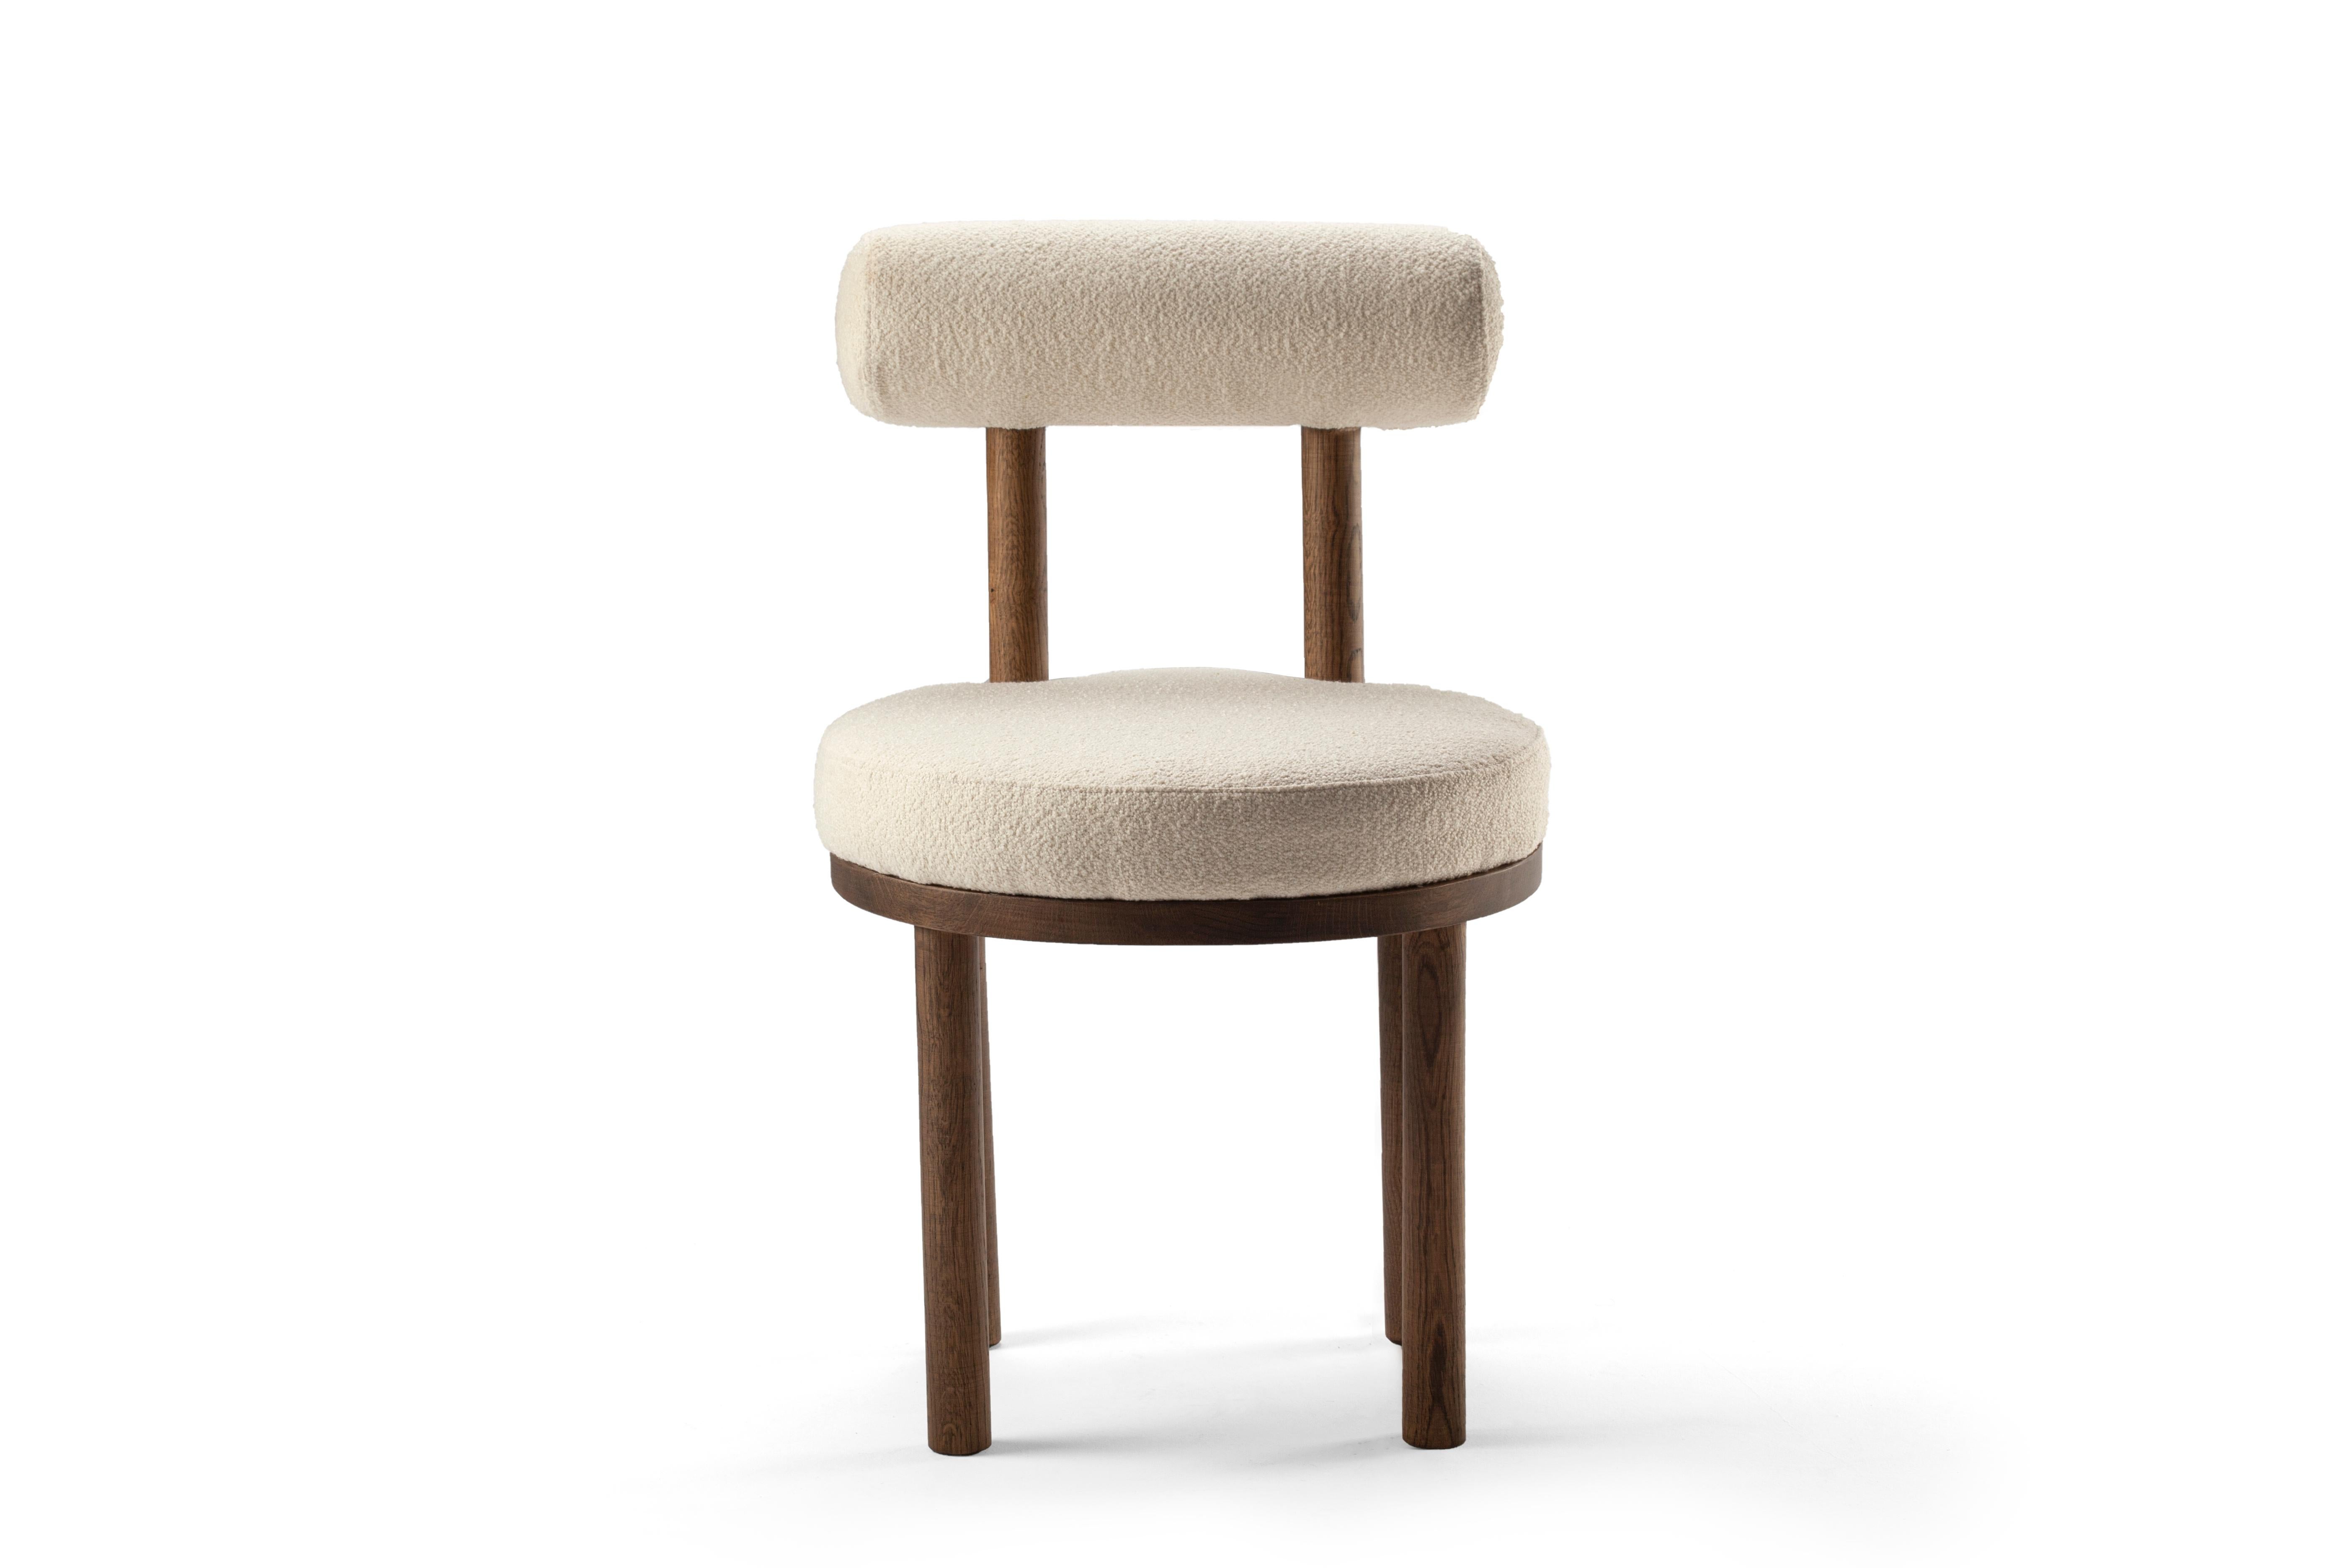 Ein Stuhl, der sowohl moderne als auch klassische Designansätze miteinander verbindet.
Der robuste und solide Stuhl ist so konzipiert, dass er den Körper umhüllt und eine aus Massivholz gefertigte Körperstruktur aufweist.